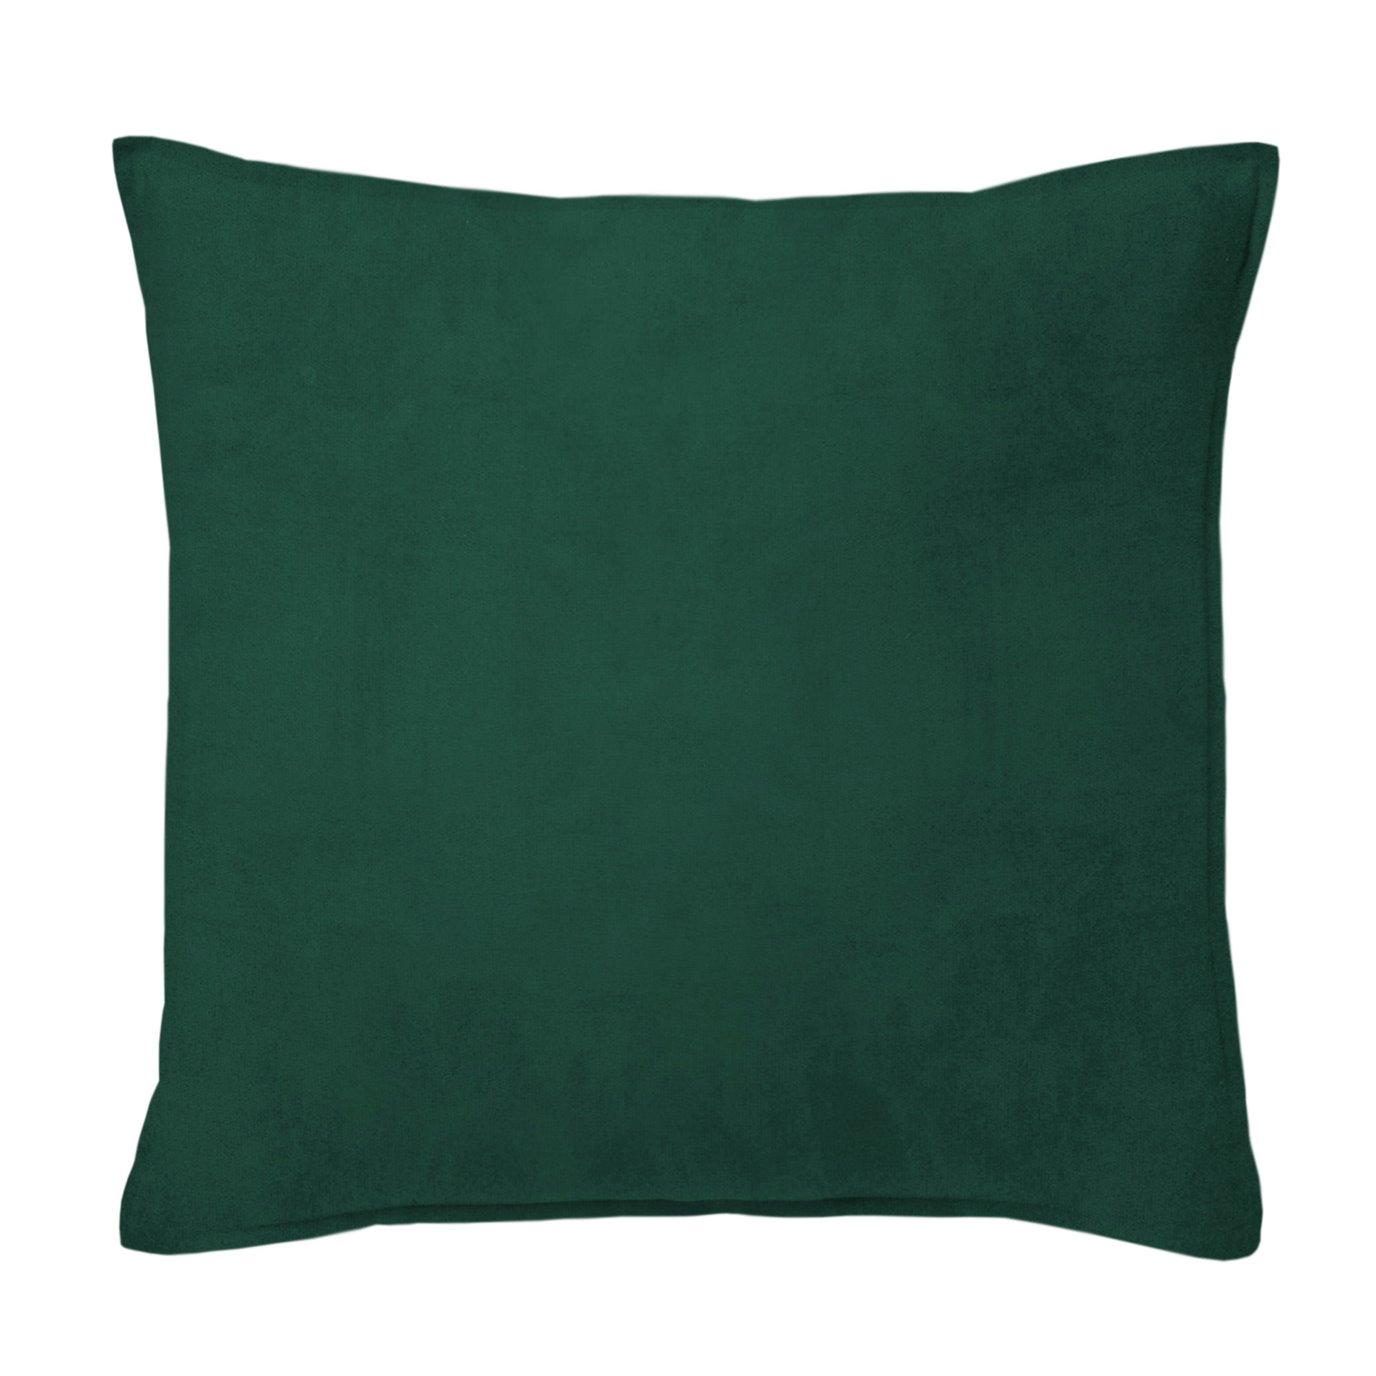 Vanessa Emerald Decorative Pillow - Size 24" Square